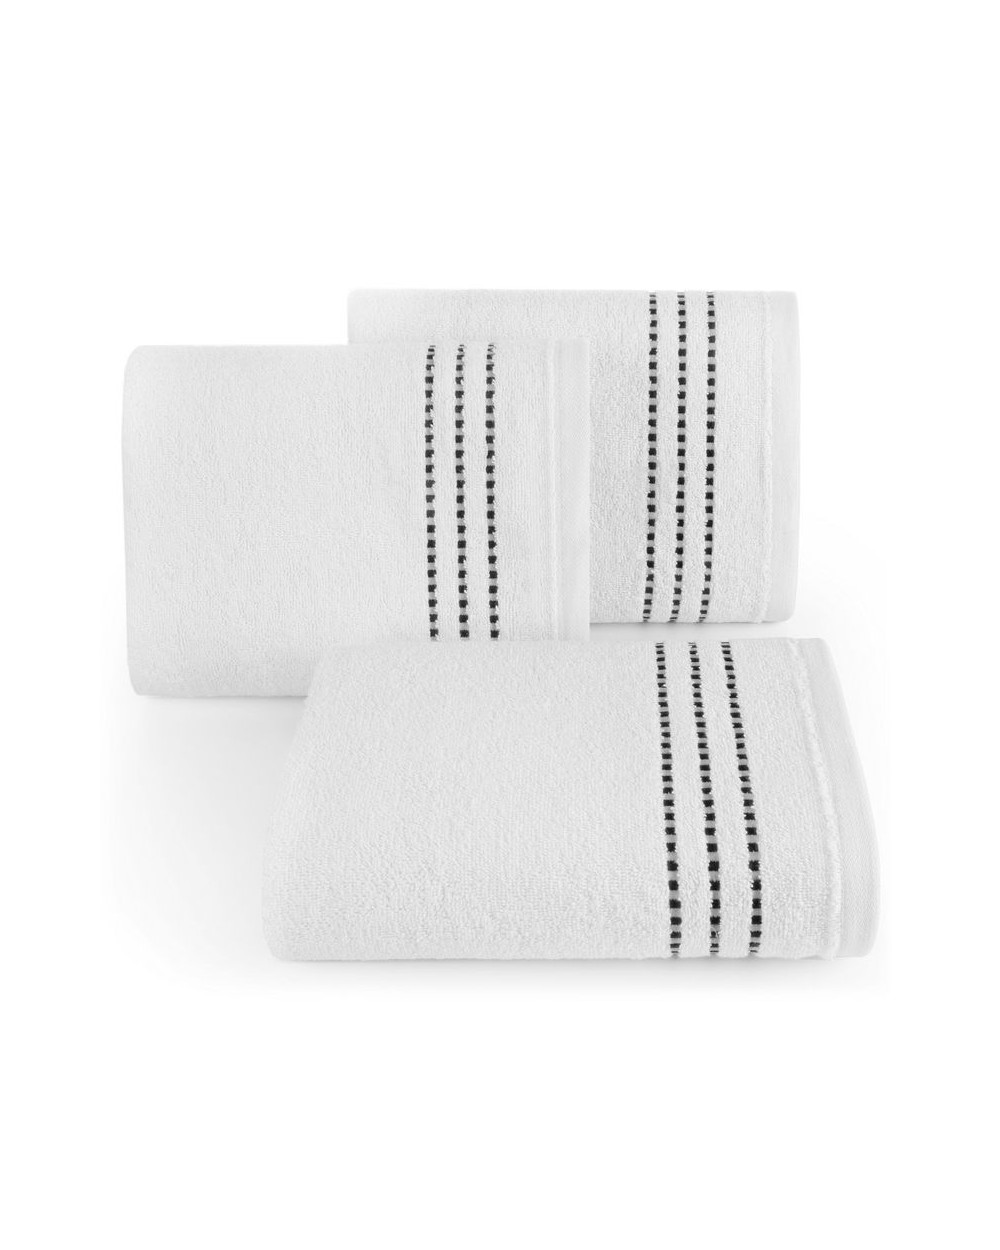 Ręcznik bawełna 70x140 Fiore biały